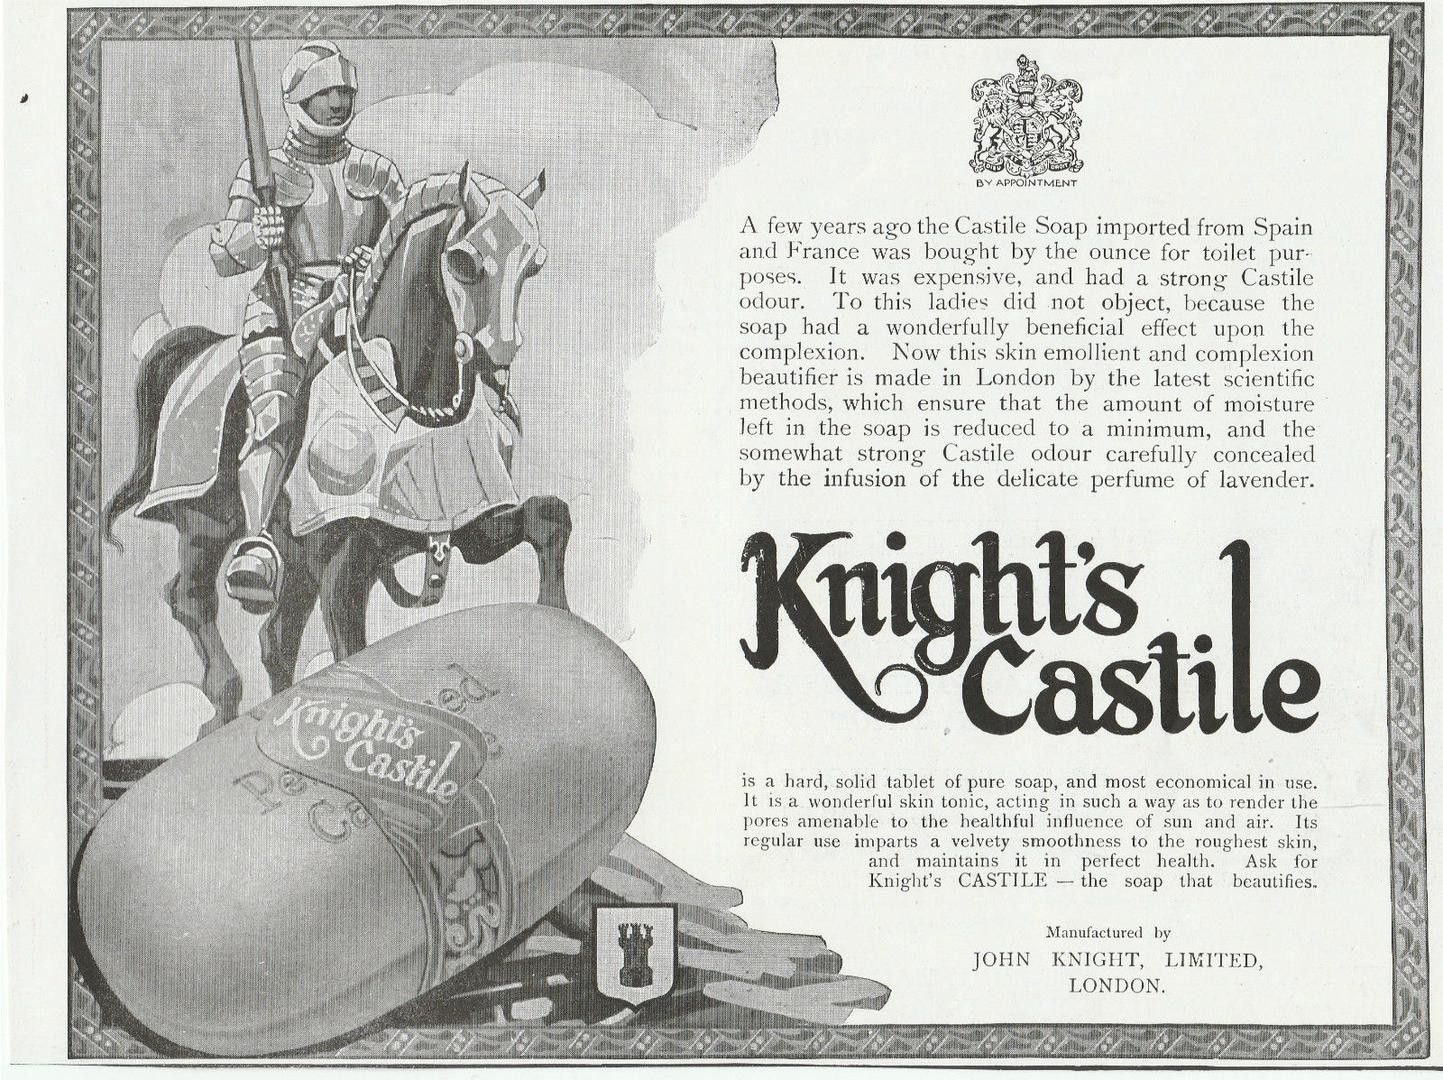 Knight's Castile Soap - print ad c1920